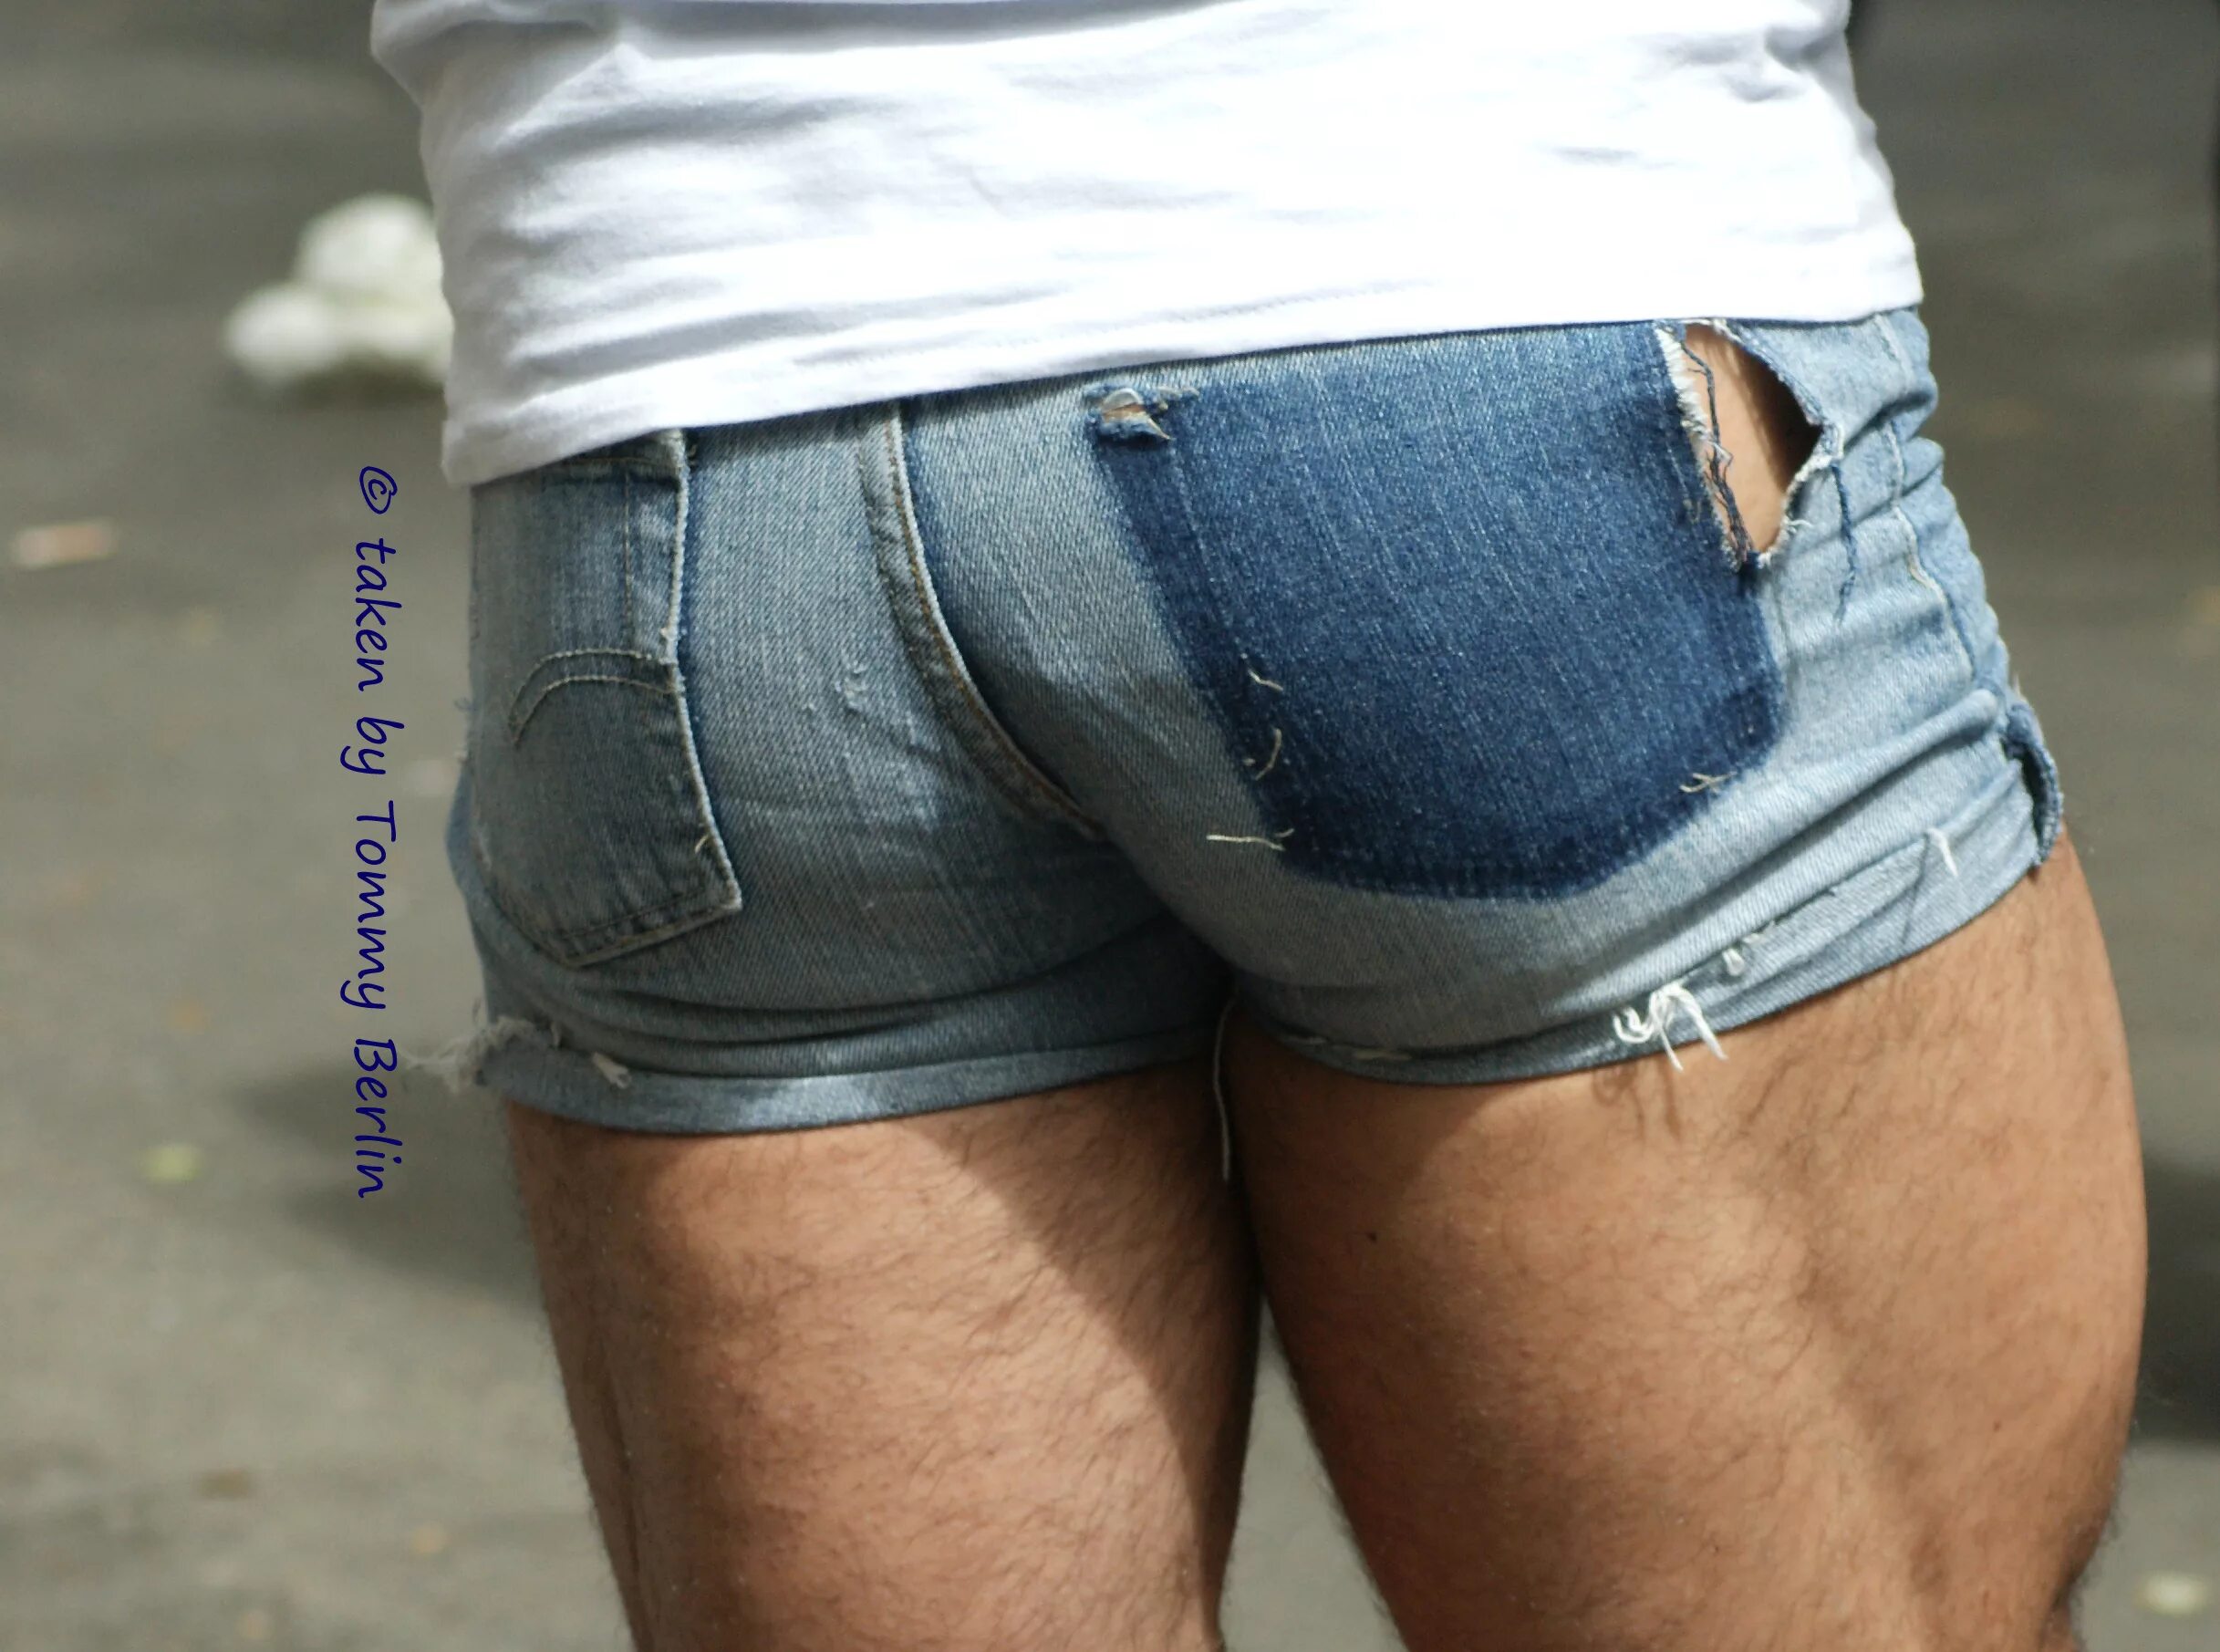 Мужик в джинсовых шортах. Мужчины в коротких джинсовых шортах. Мужской зад в джинсах. Мужской зад в рваных джинсах.